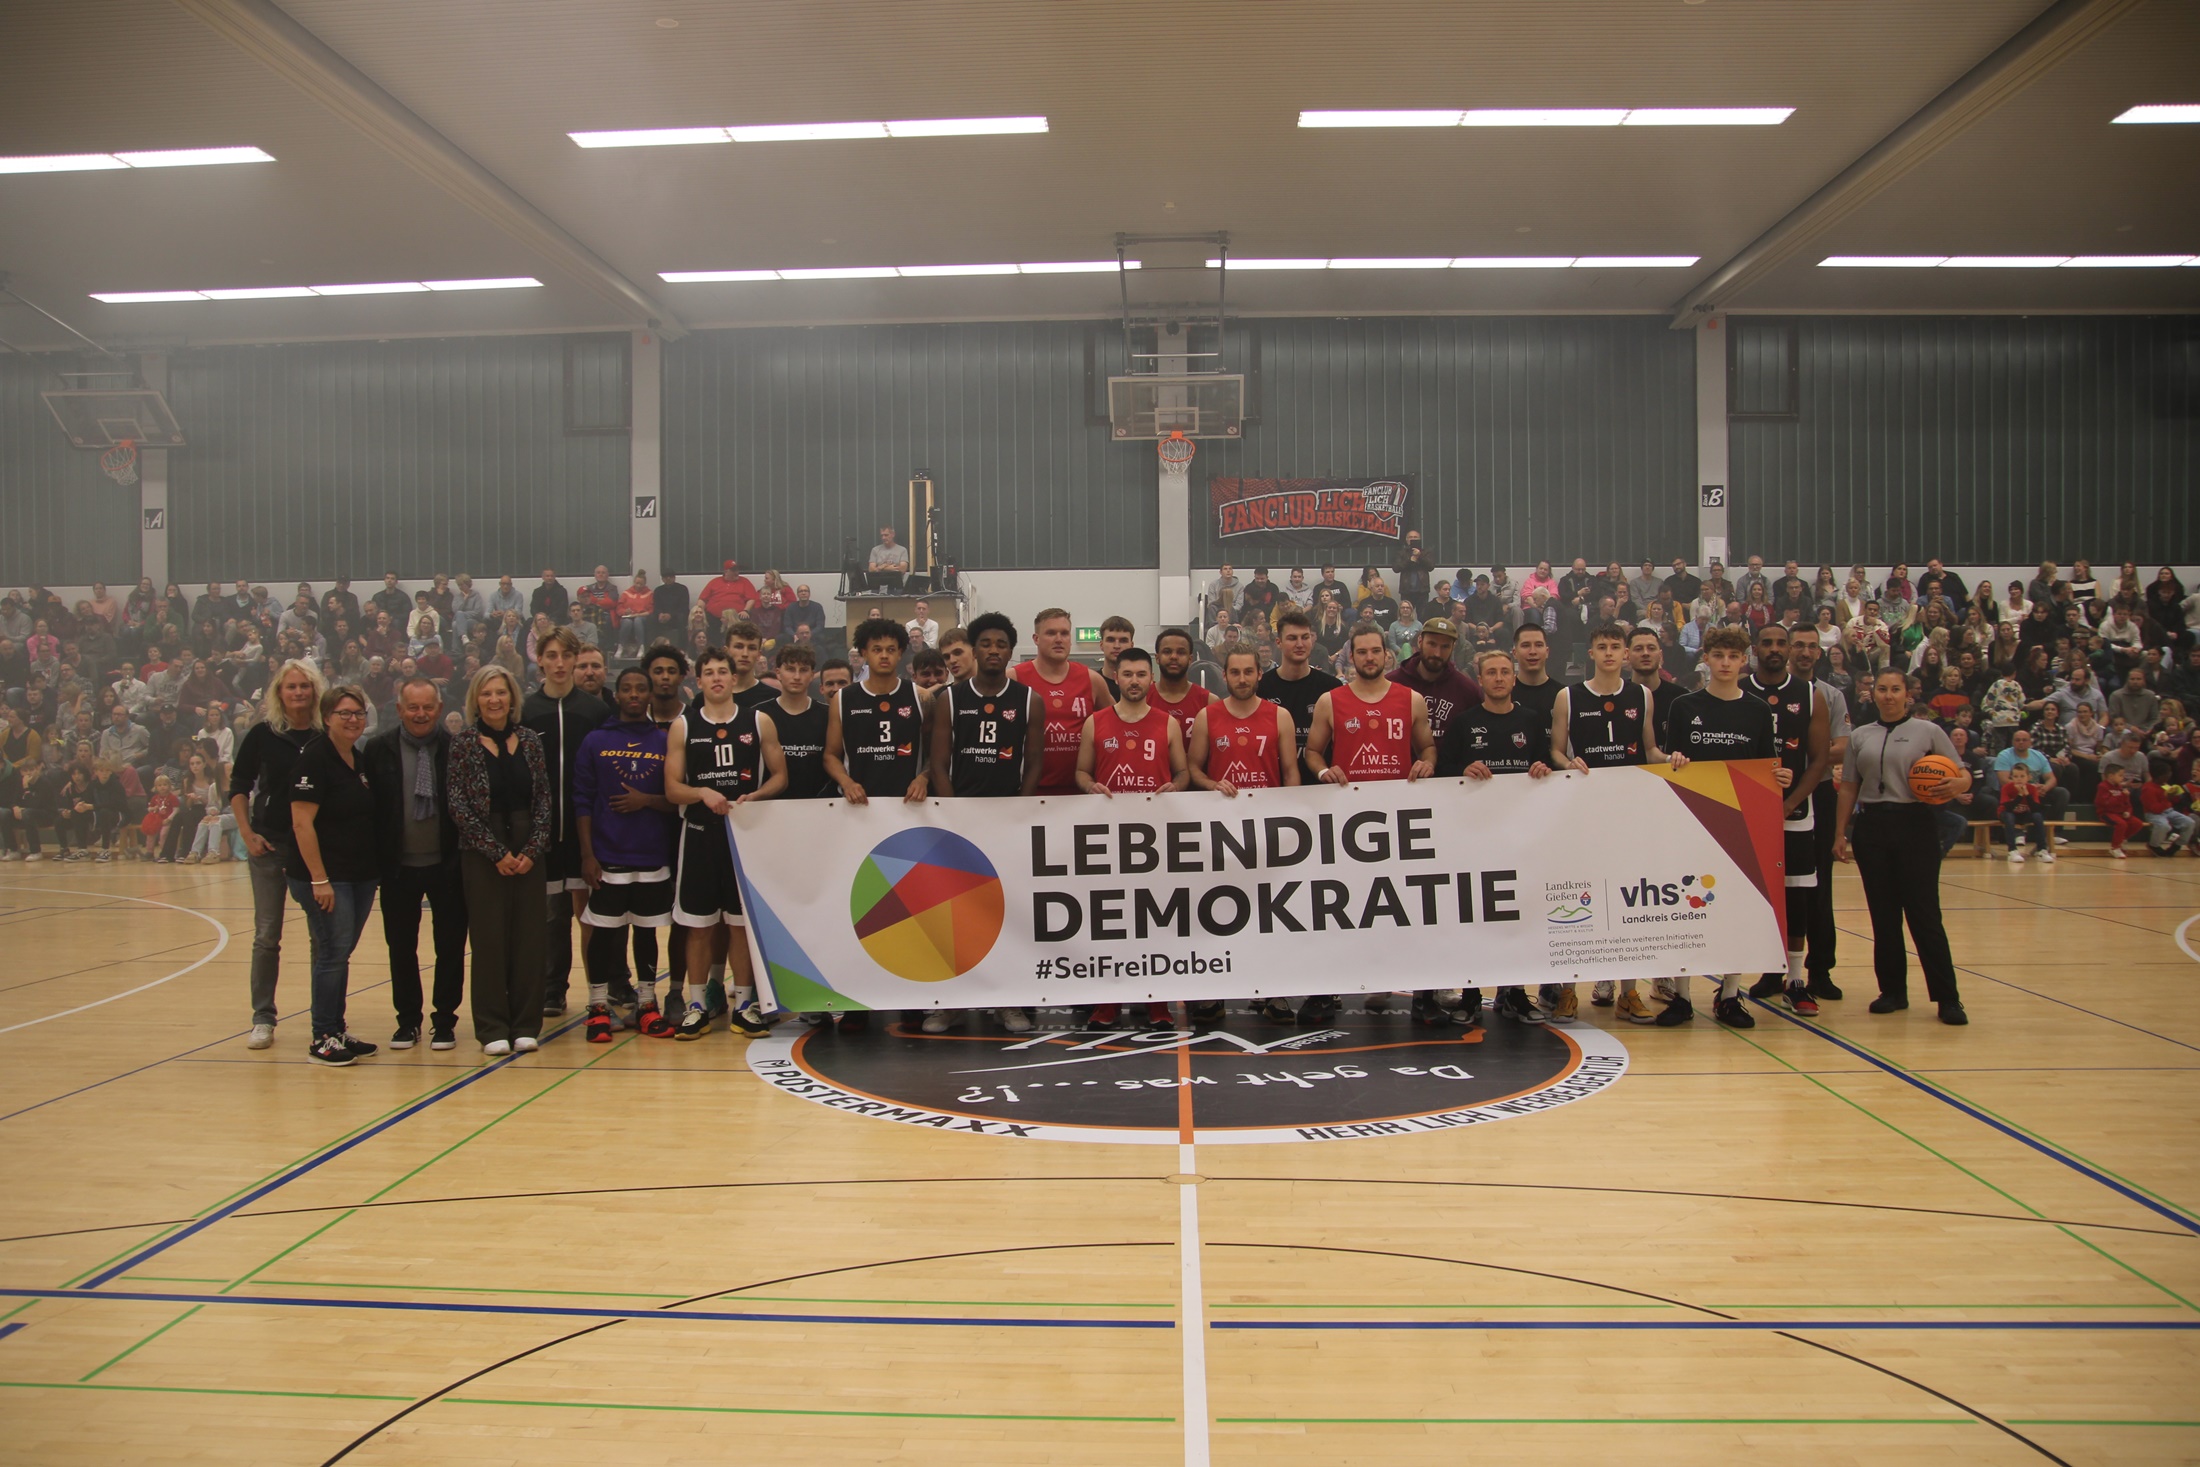 Mottospieltag für die lebendige Demokratie: Die Teams von LICH Basketball und der TG Hanau setzten vor über 900 Menschen gemeinsam ein Zeichen gegen Ausgrenzung und Rassismus. (Foto: Landkreis Gießen)